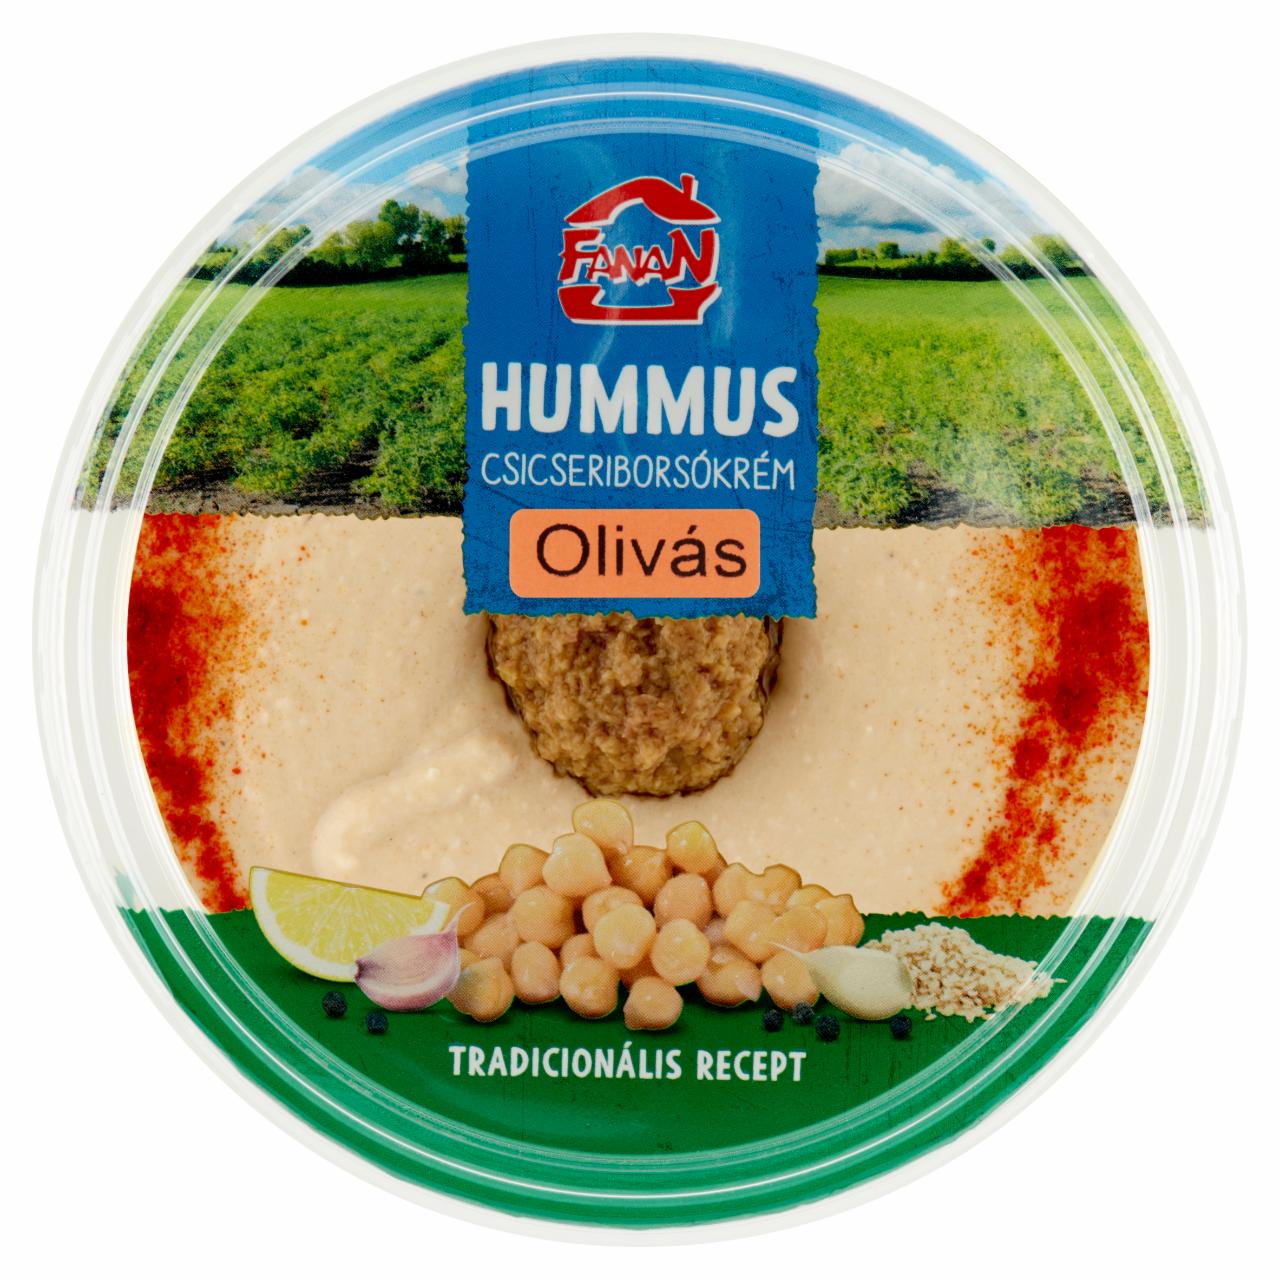 Képek - Fanan hummus olivás csicseriborsó krém 250 g